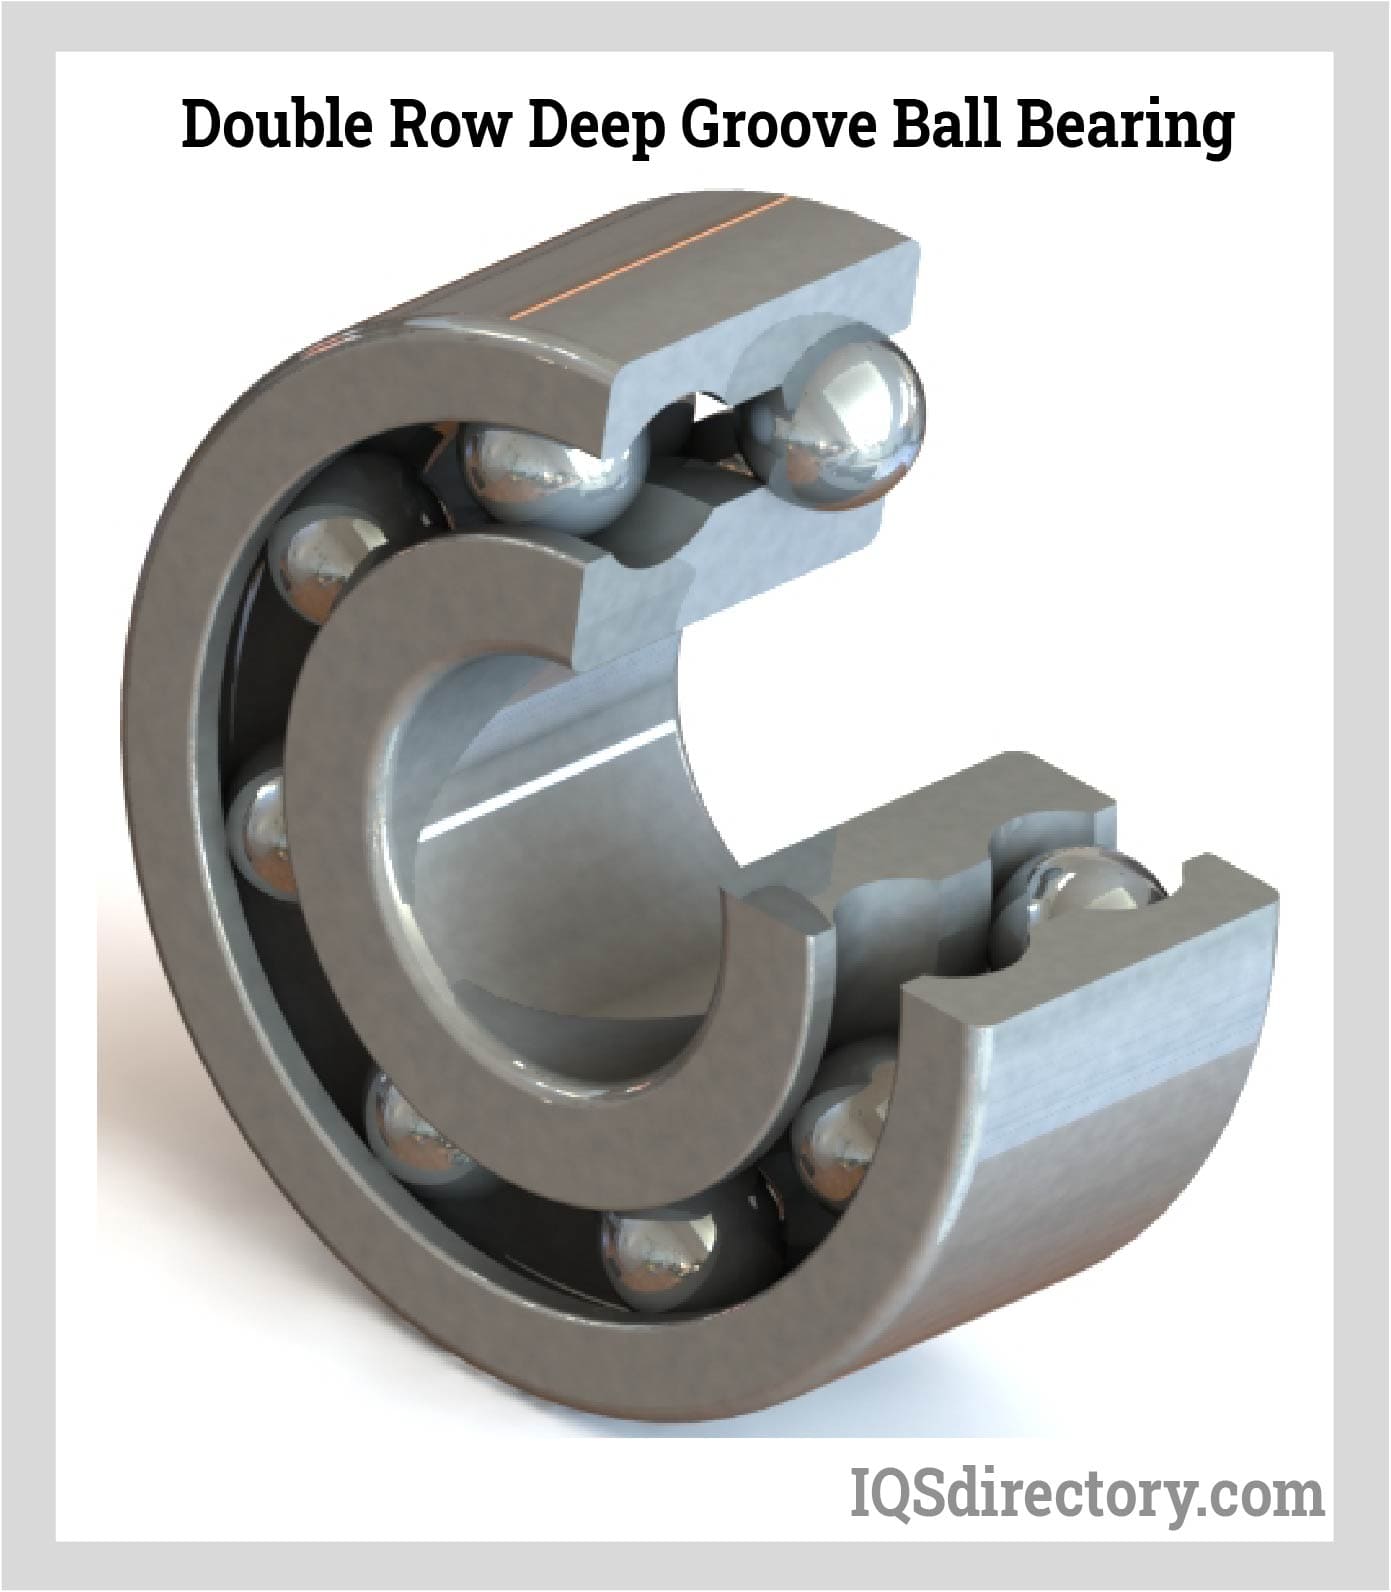 Double Row Deep Groove Ball Bearing